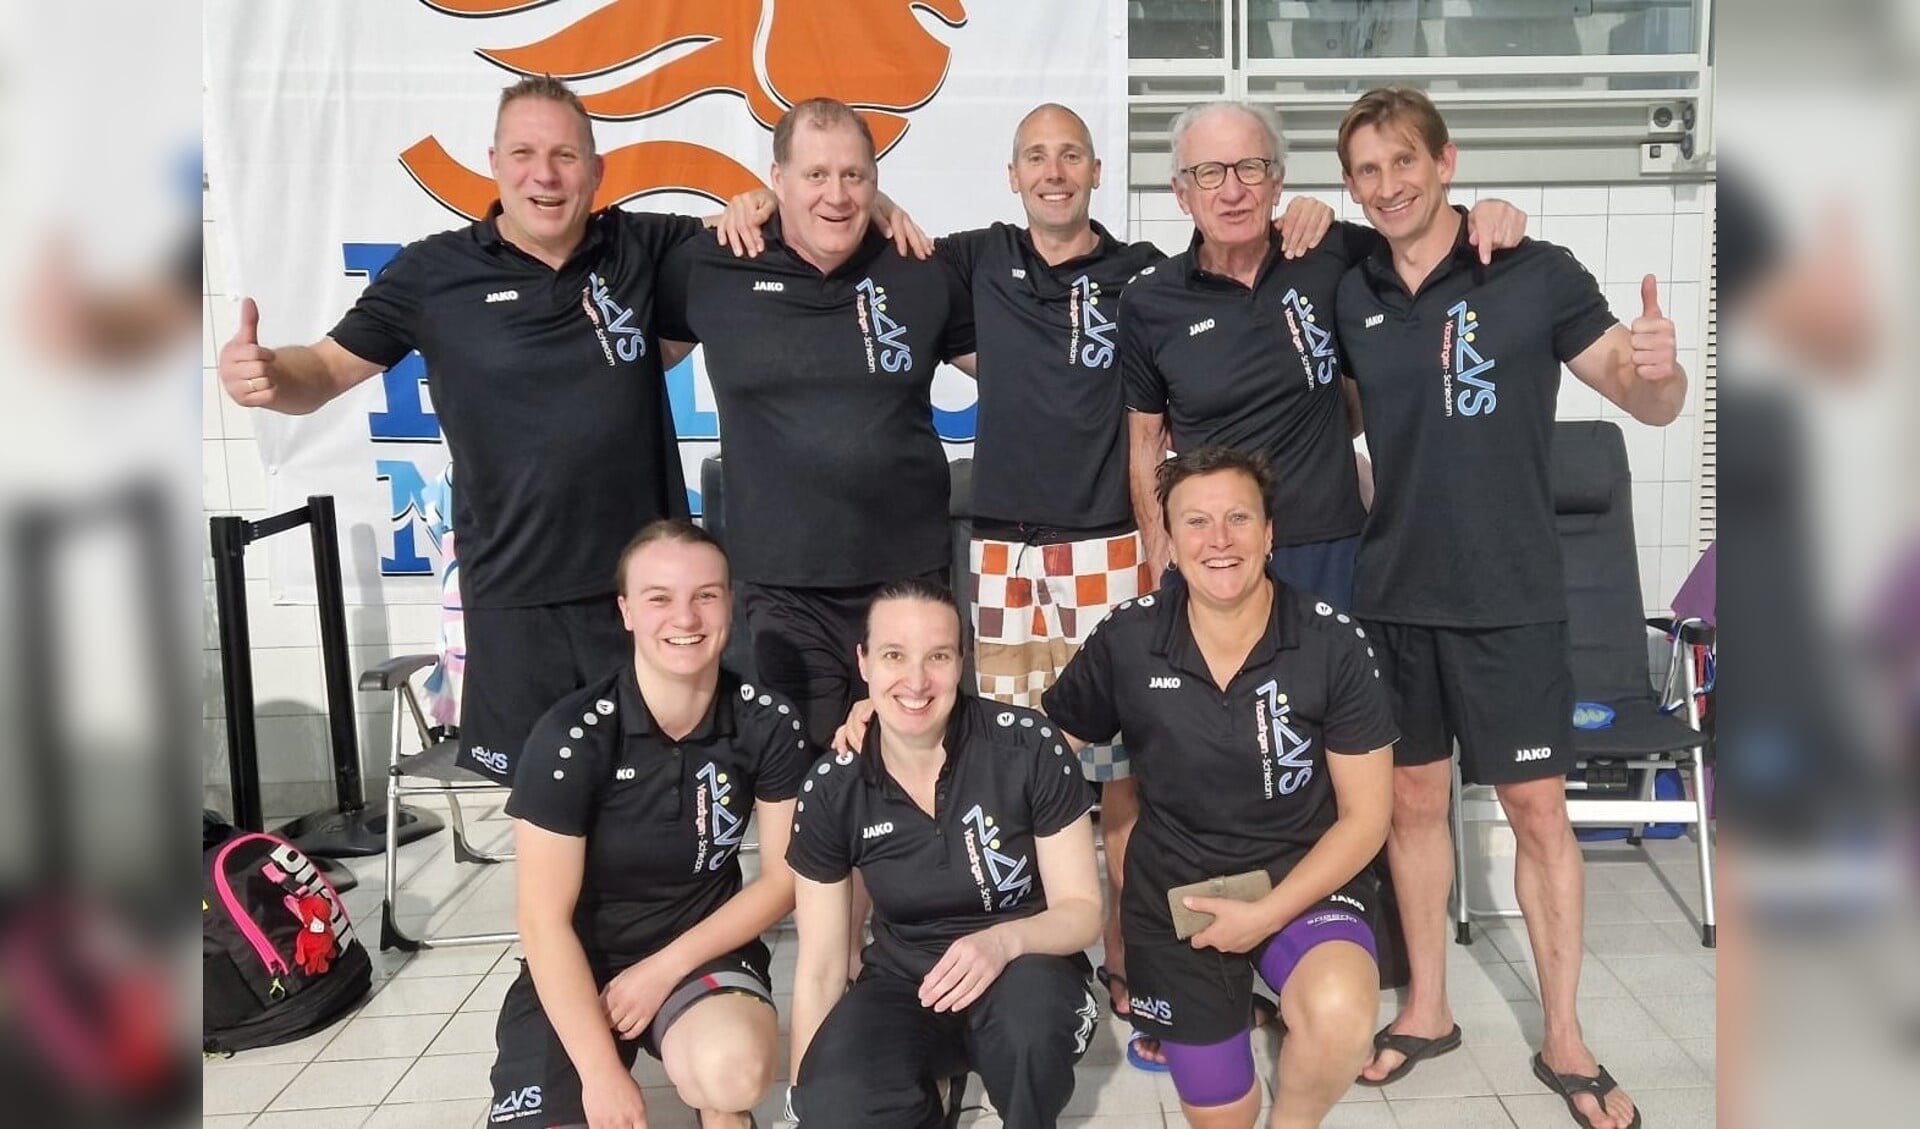 De succesvolle ZVVS-zwemploeg die met niet minder dan 14 medailles terugkwam van Nederlandse kampioenschappen voor masters.